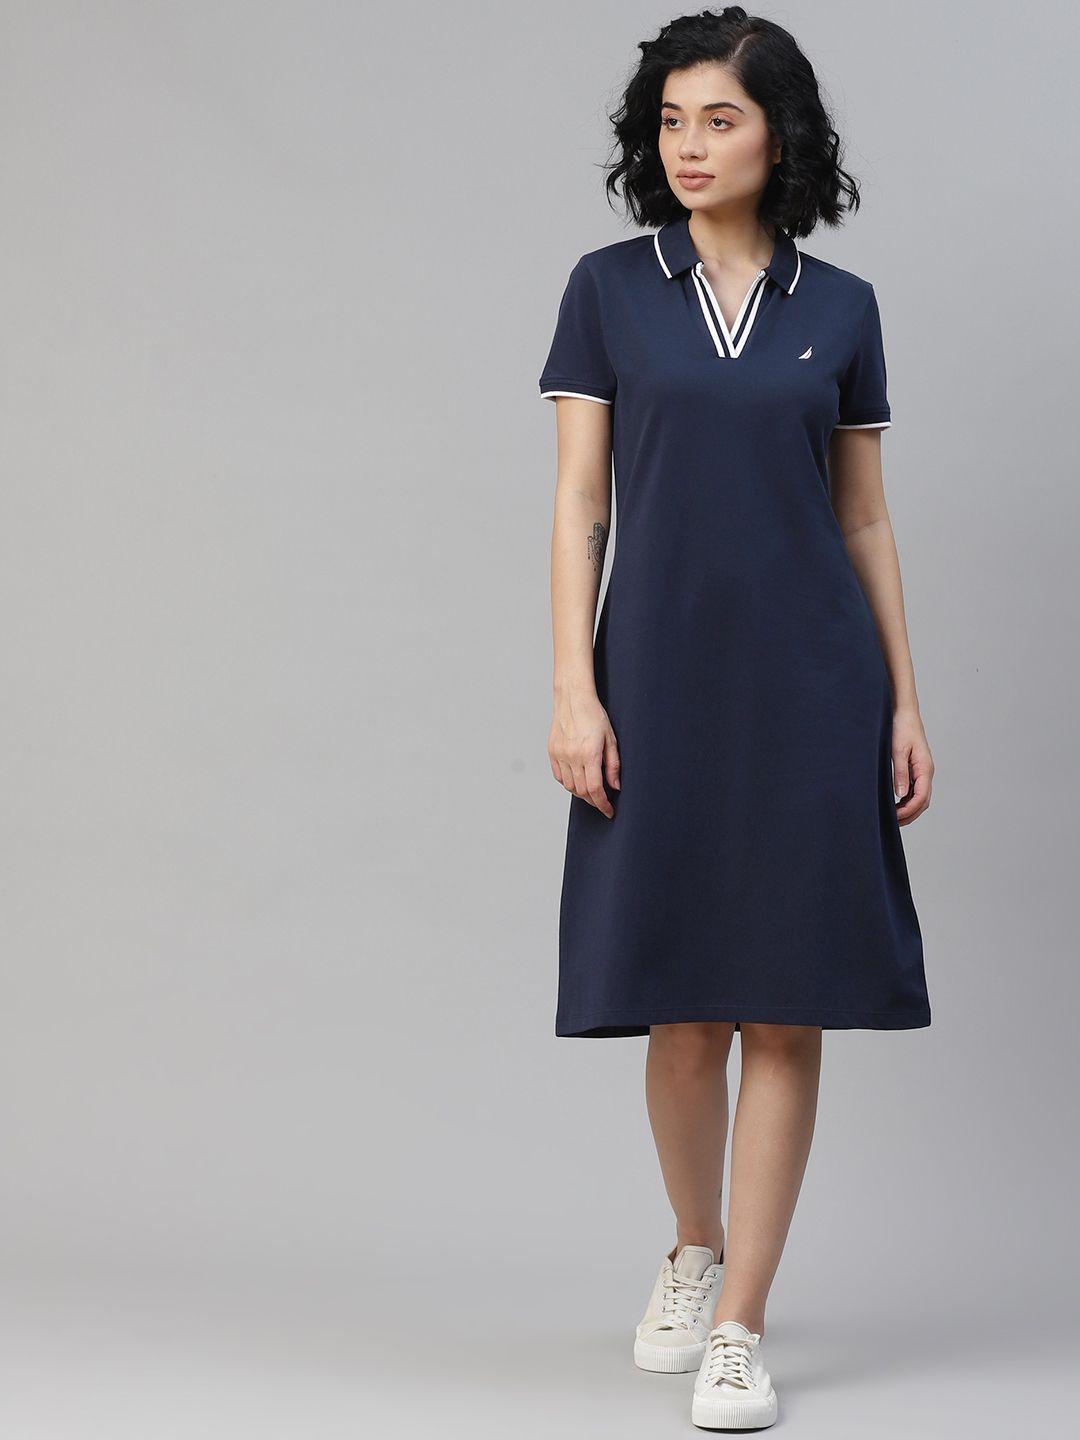 nautica women navy blue solid t-shirt dress